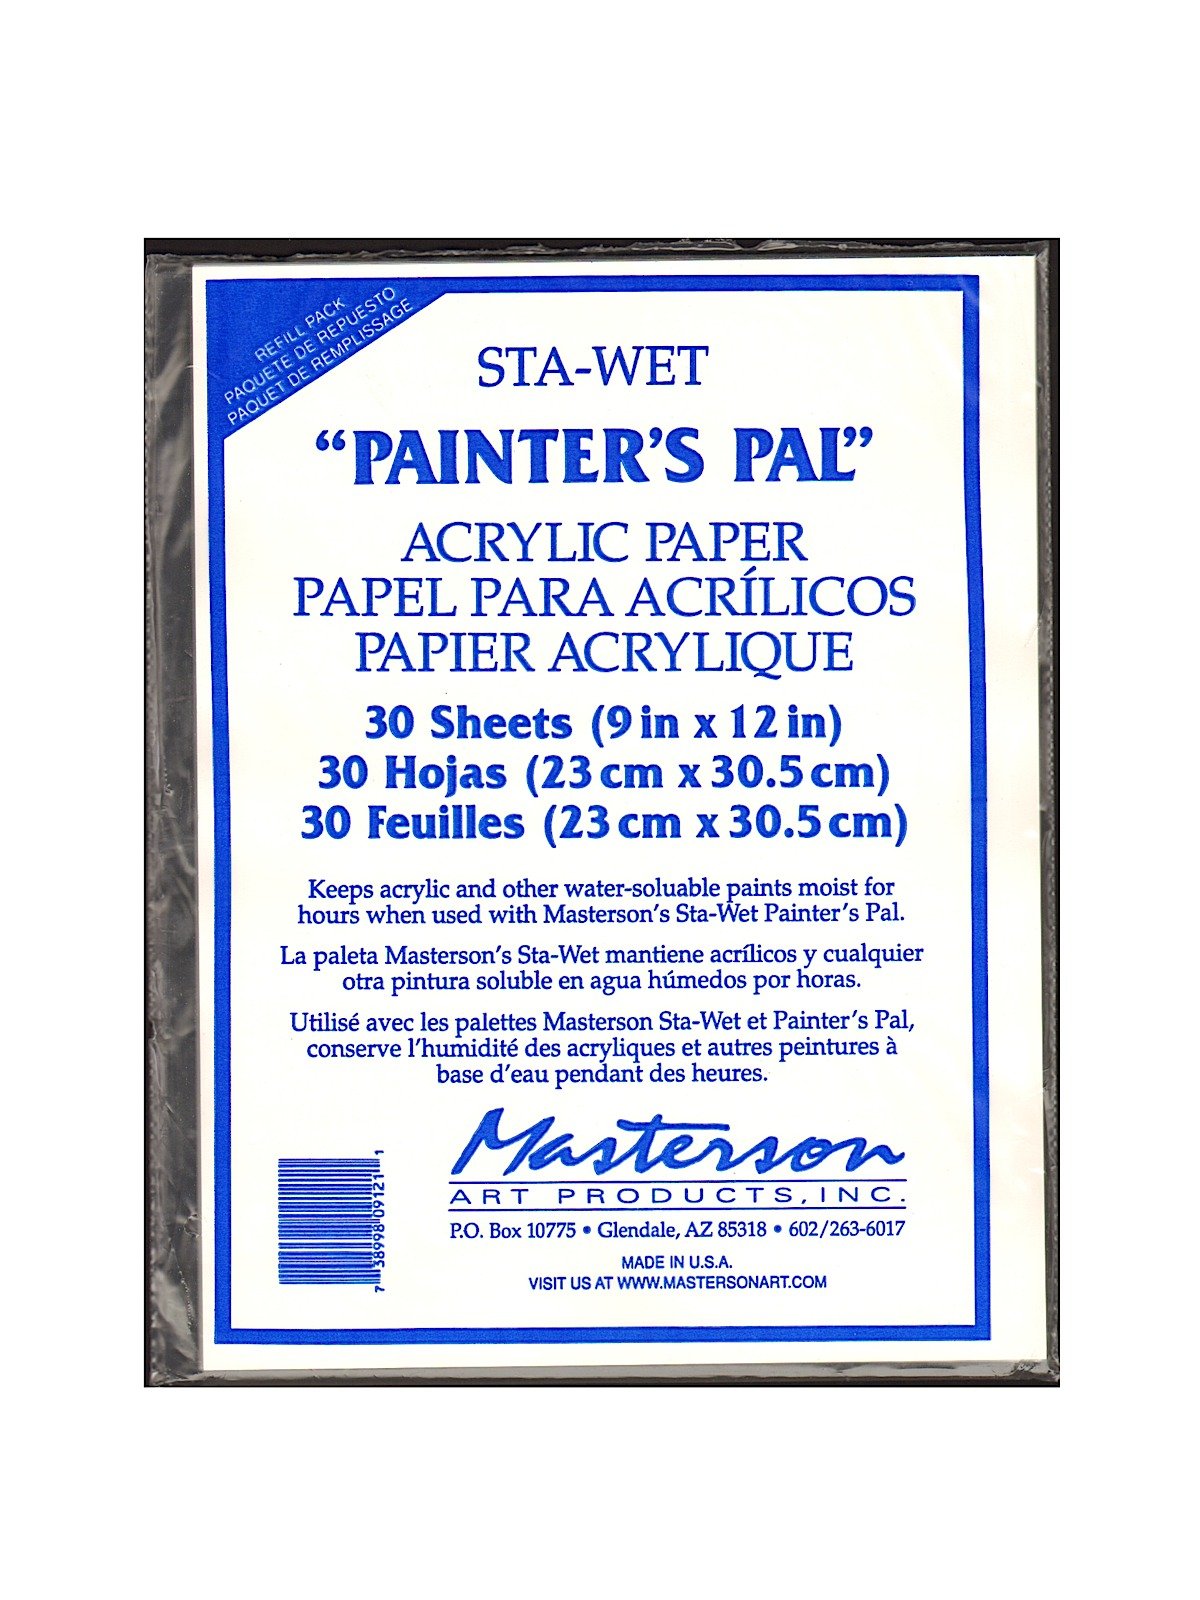 Sta-Wet Painter's Pal Palette